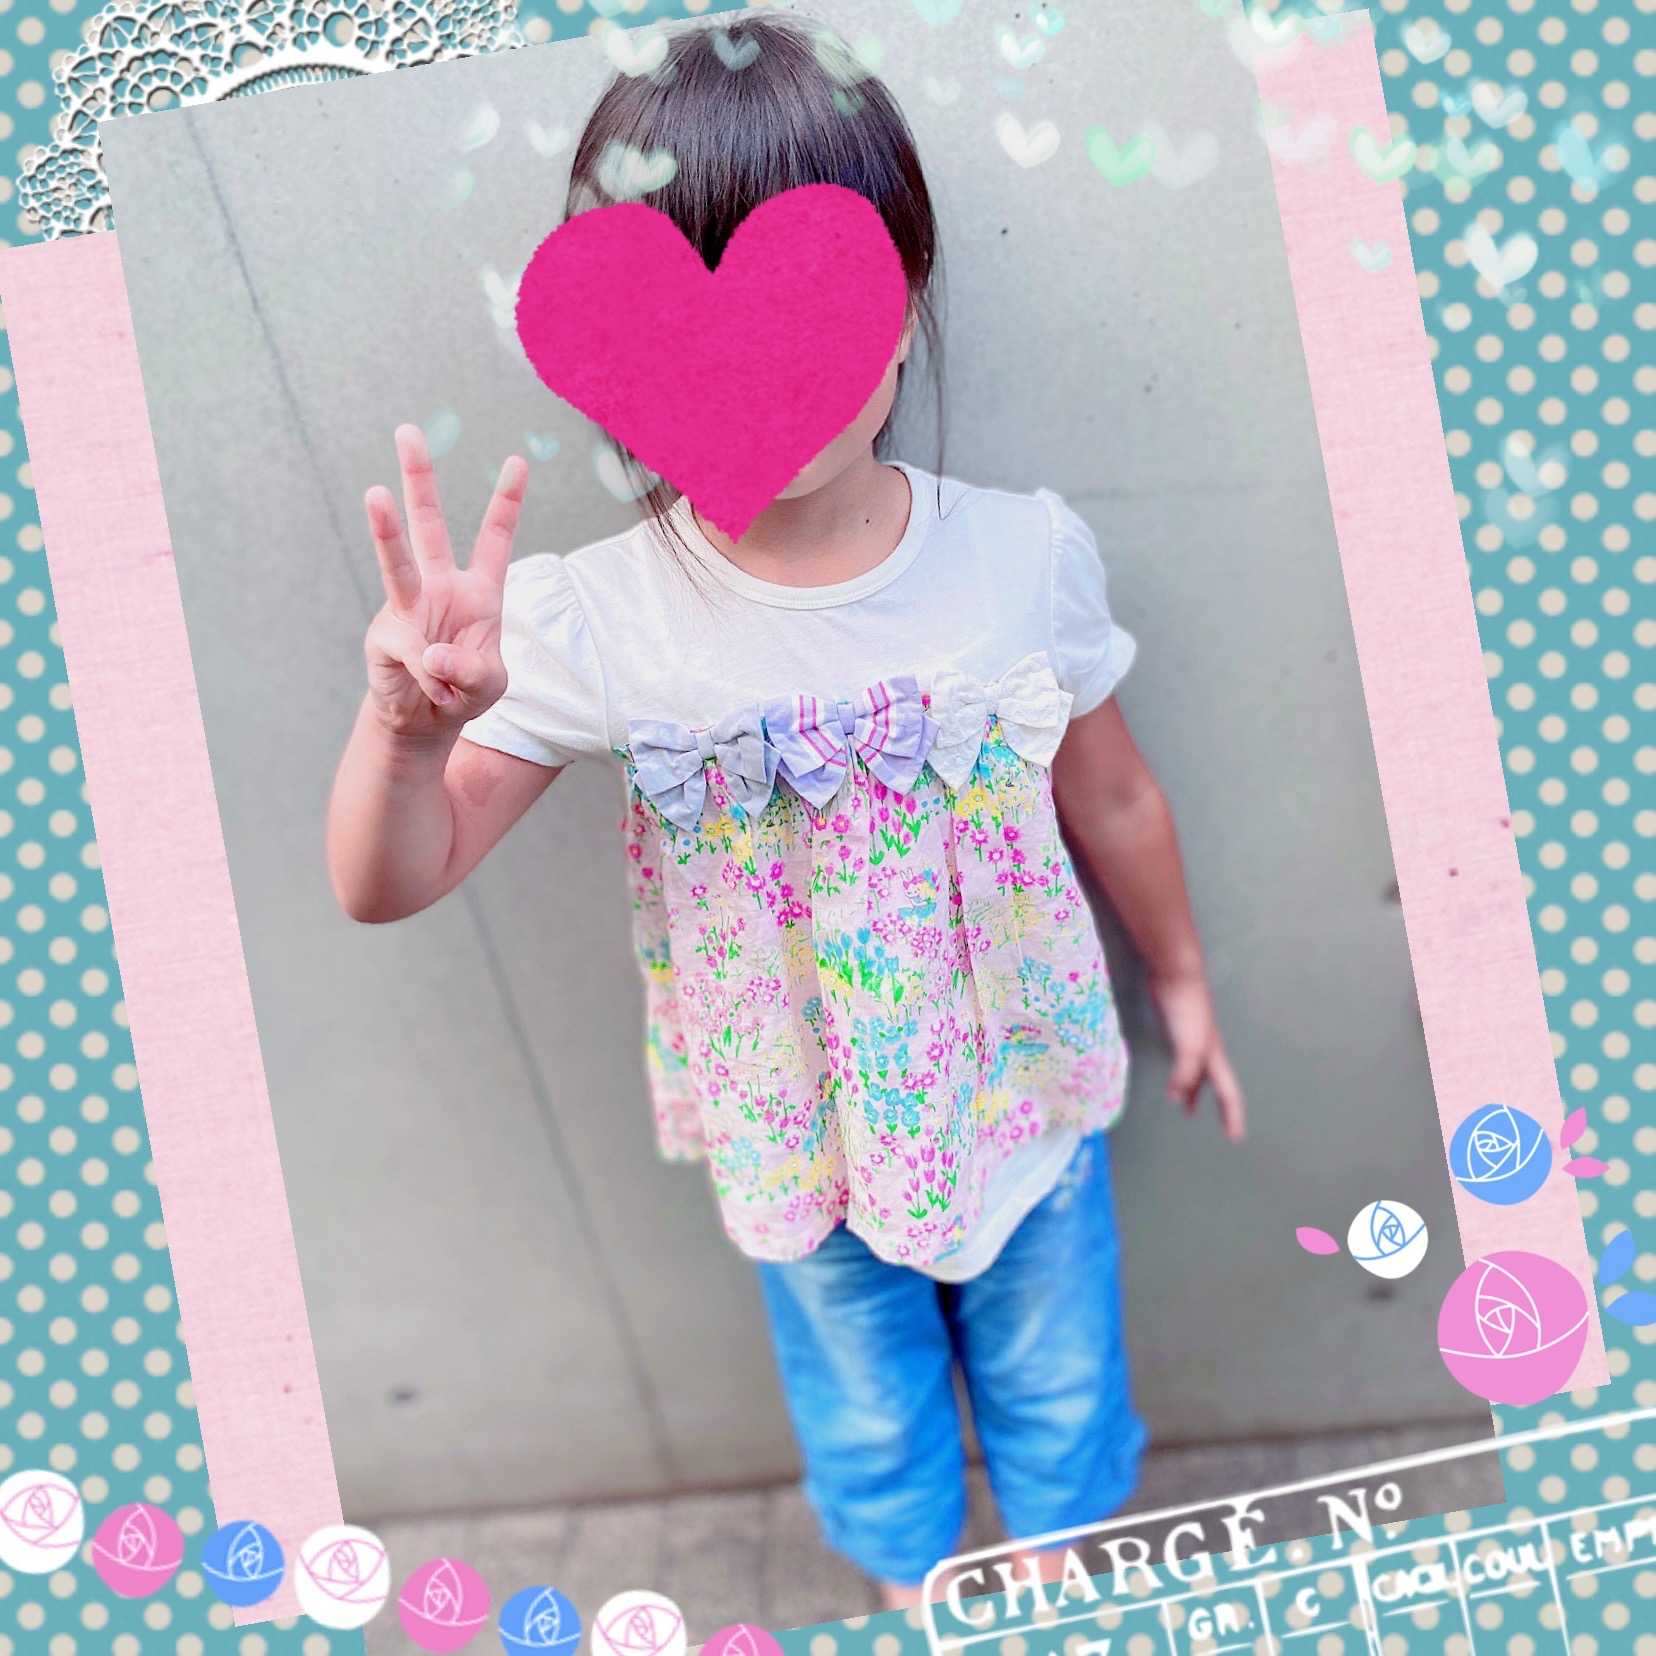 ニットプランナー/KP]の記事一覧 みかづきの子供服お買い物ブログ 楽天ブログ